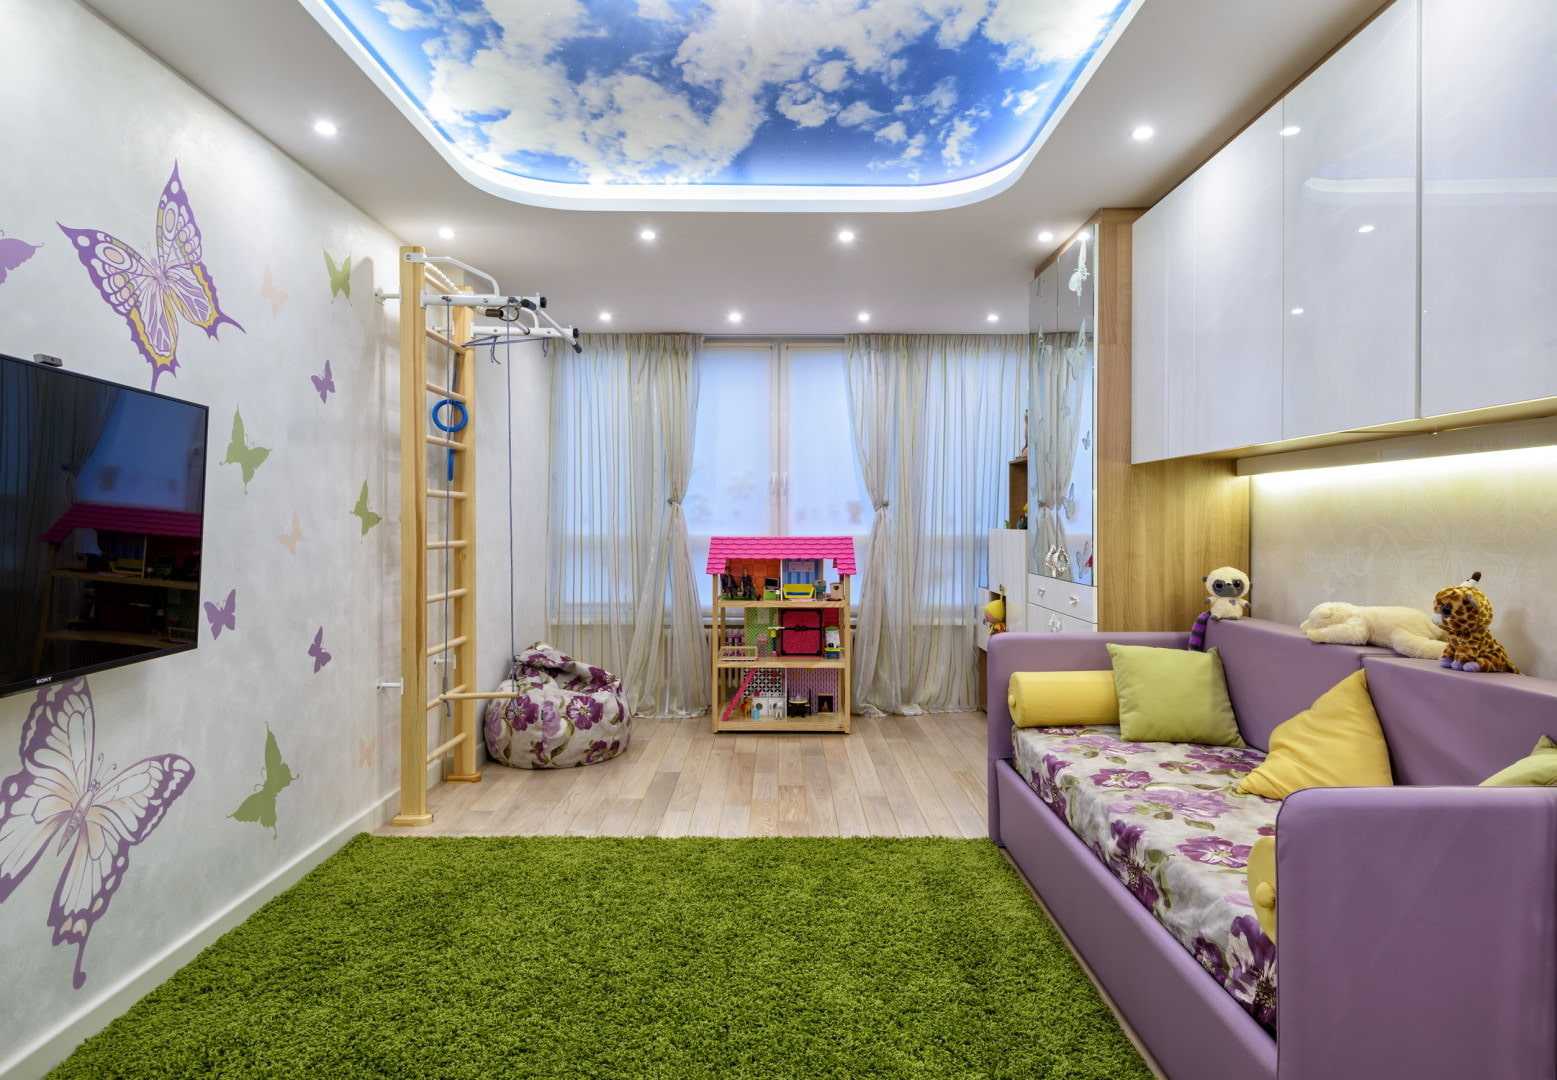 Преимущества и недостатки натяжных потолков в детской комнате Основные моменты на которые следует обратить внимание при выборе дизайна потолка